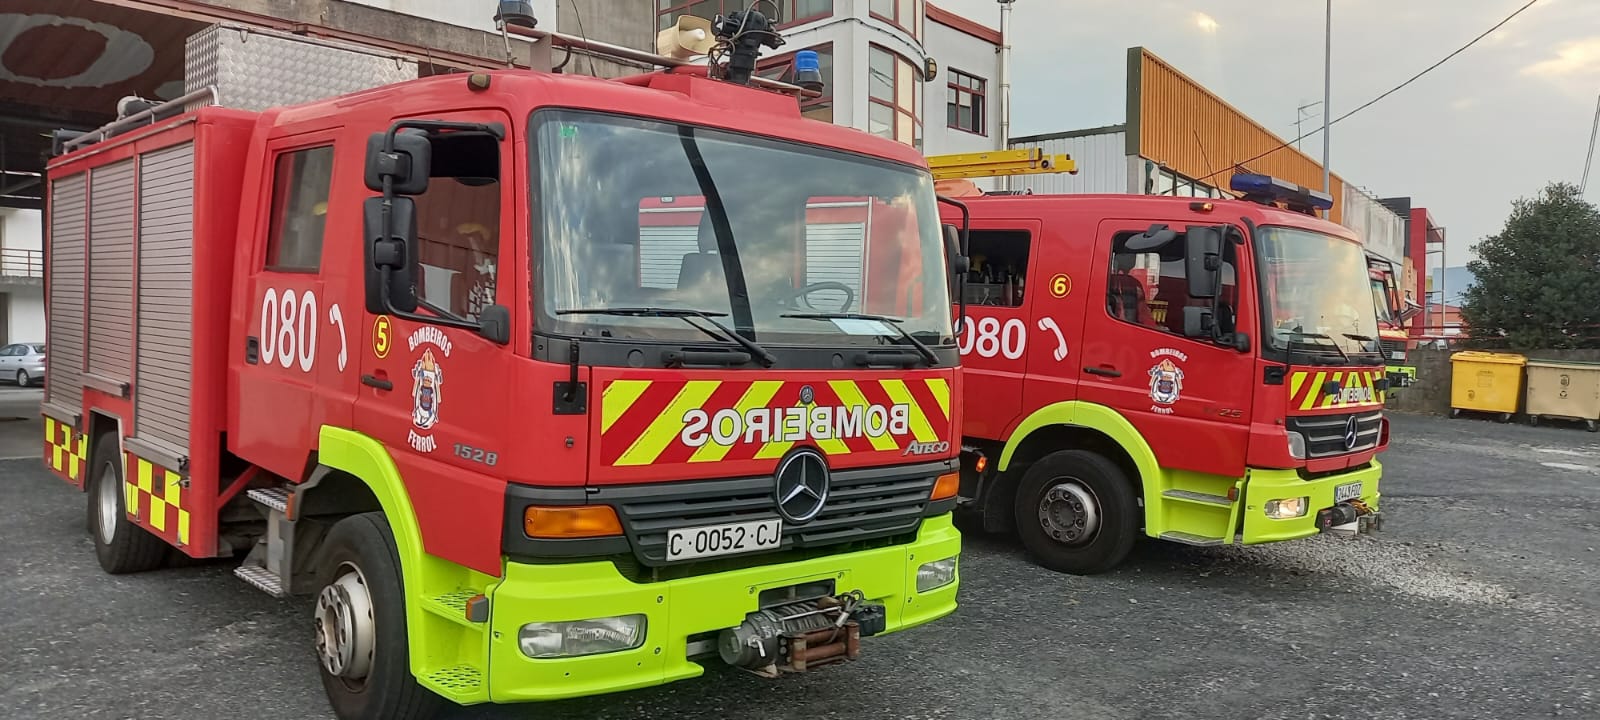 Nueva rotulación de los coches de bomberos